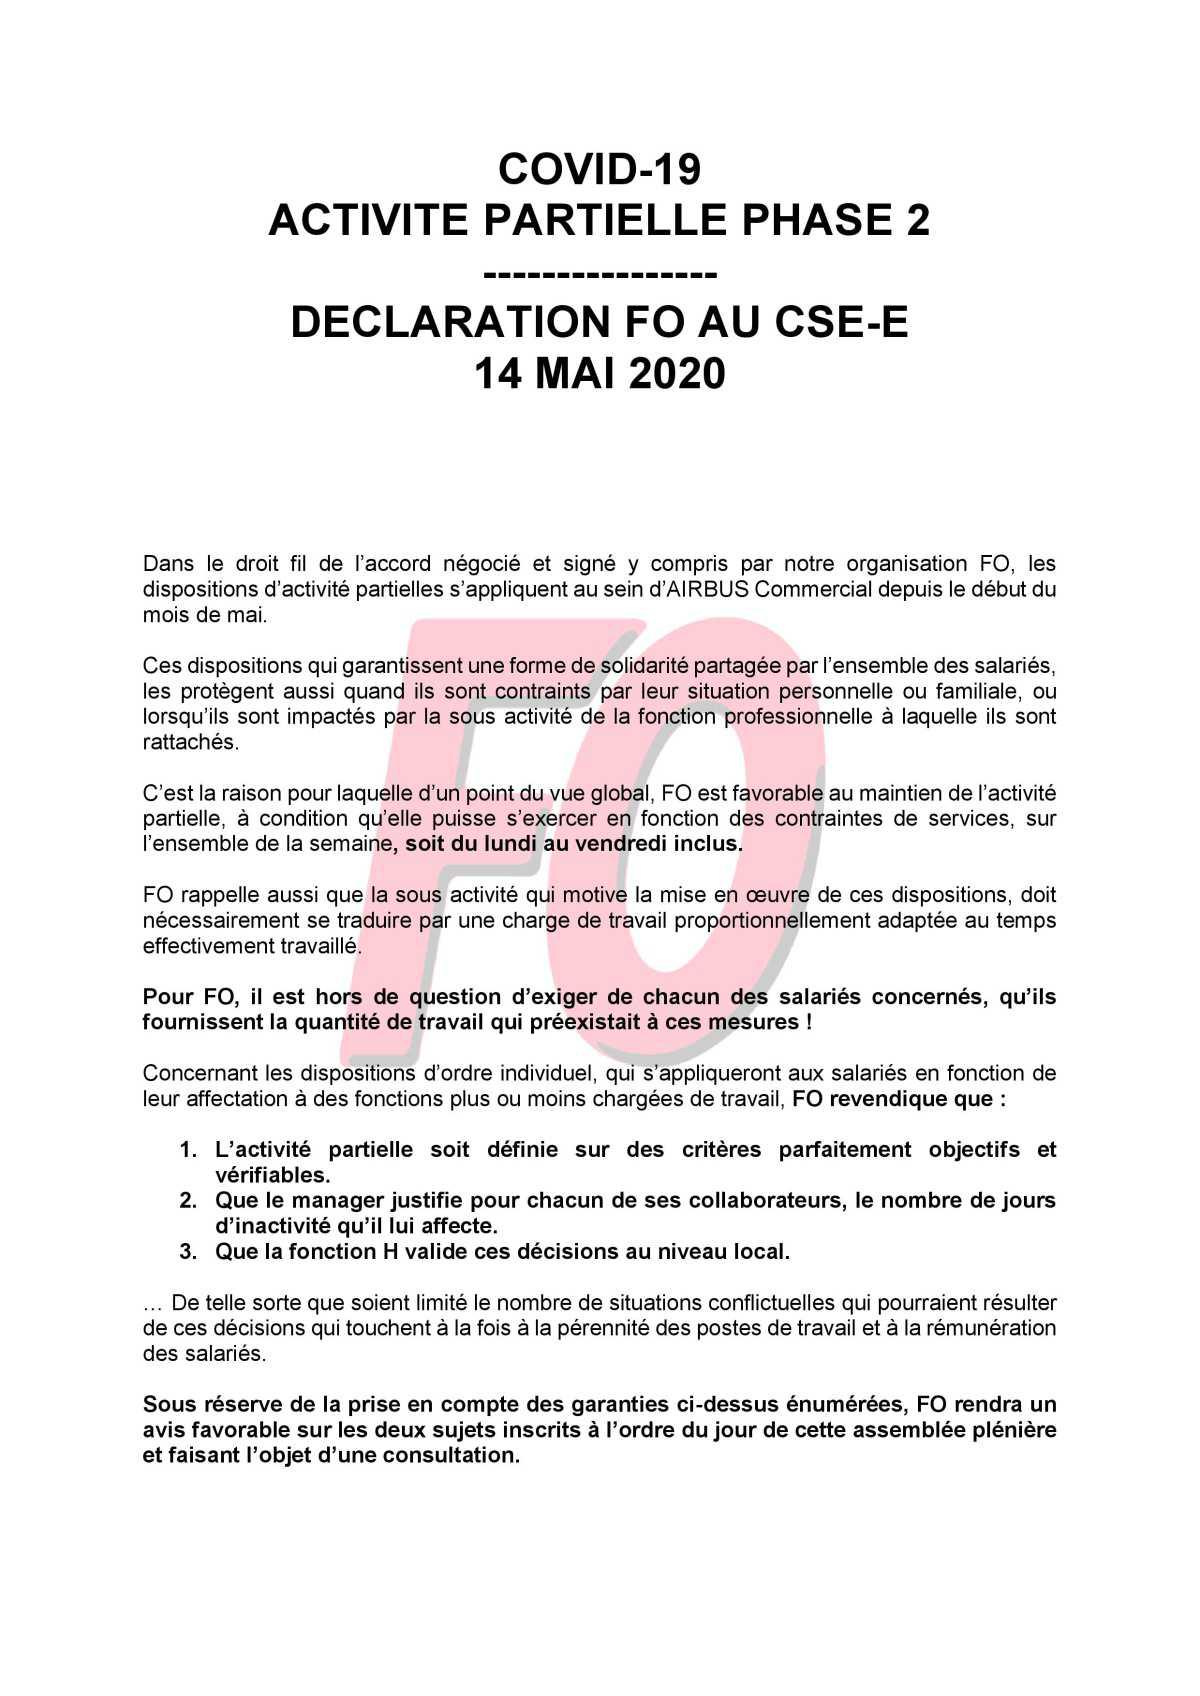 Déclaration FO au CSE.E du 14 Mai 2020